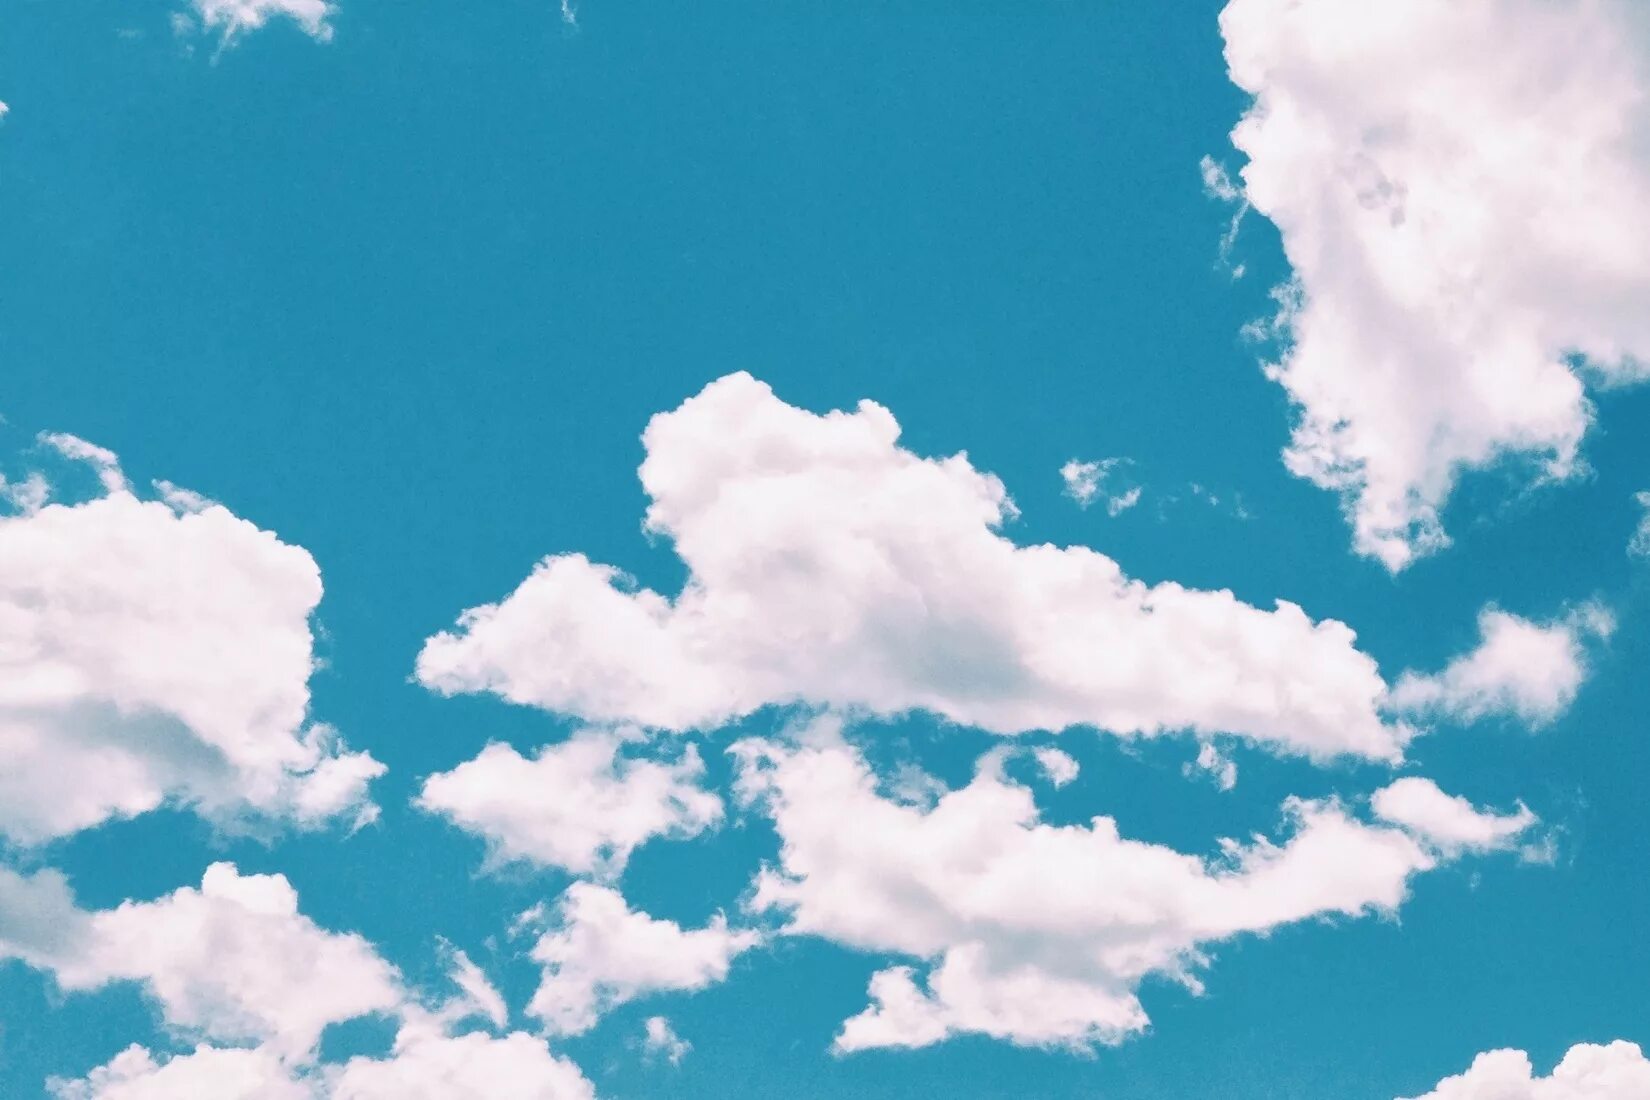 Cloud desktops. Облака. Фон облака. Небо. Голубое небо с облаками.